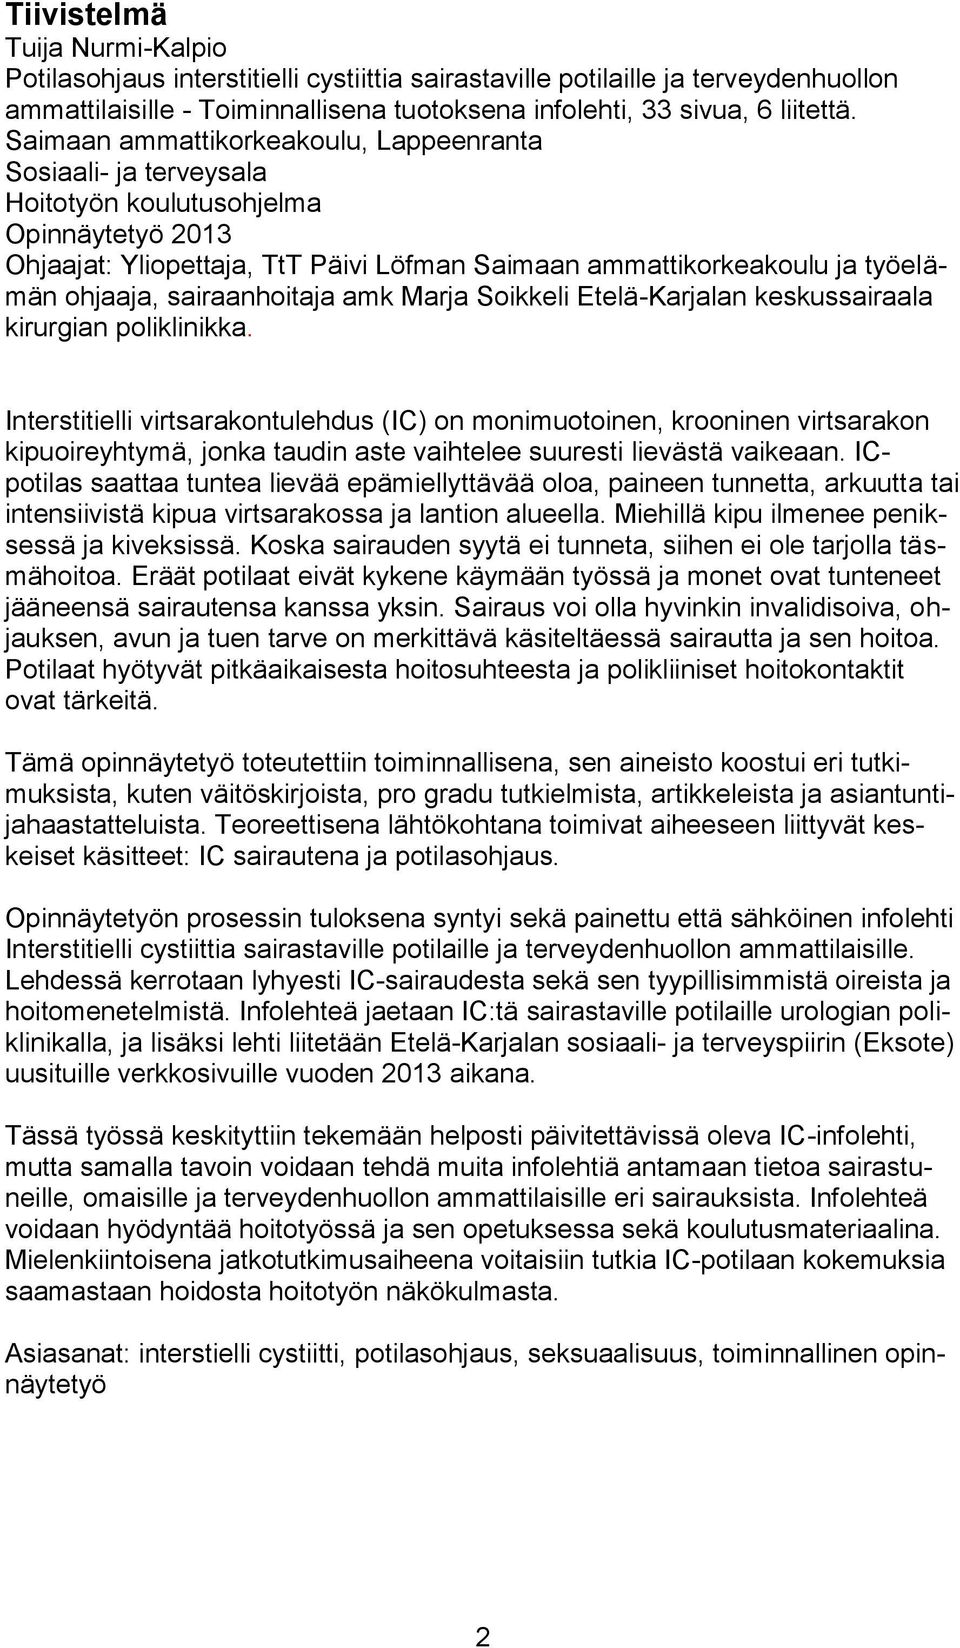 sairaanhoitaja amk Marja Soikkeli Etelä-Karjalan keskussairaala kirurgian poliklinikka.